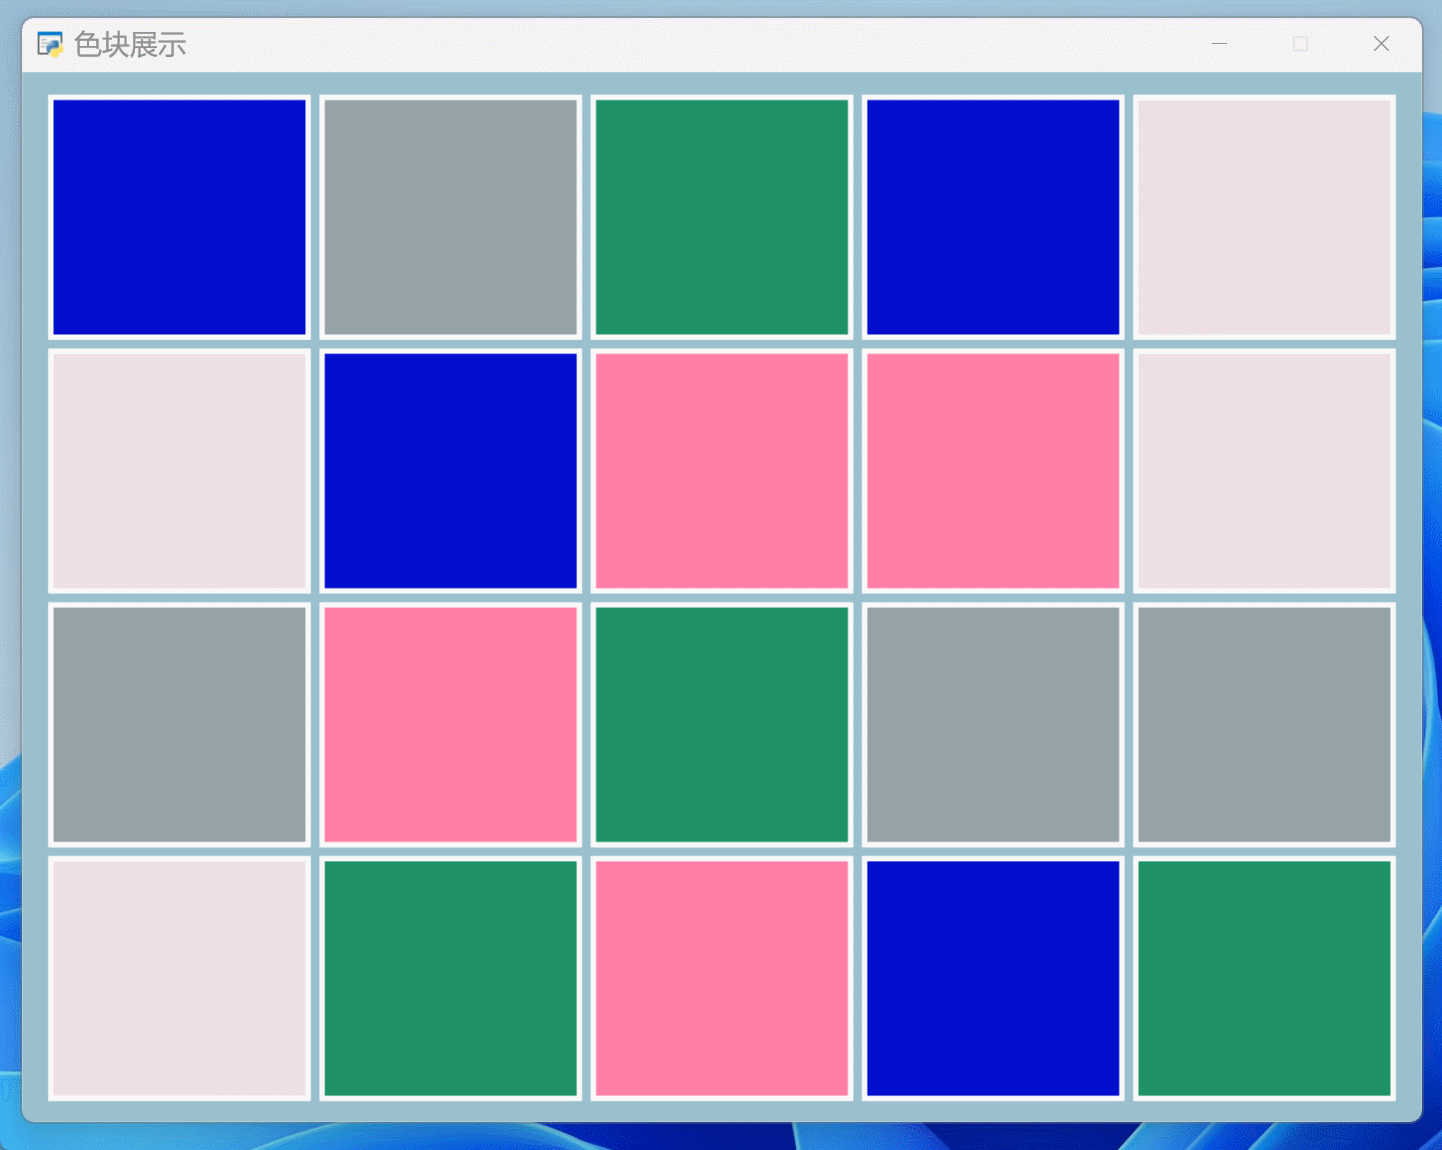 Python 一步一步教你用pyglet制作“彩色方块连连看”游戏